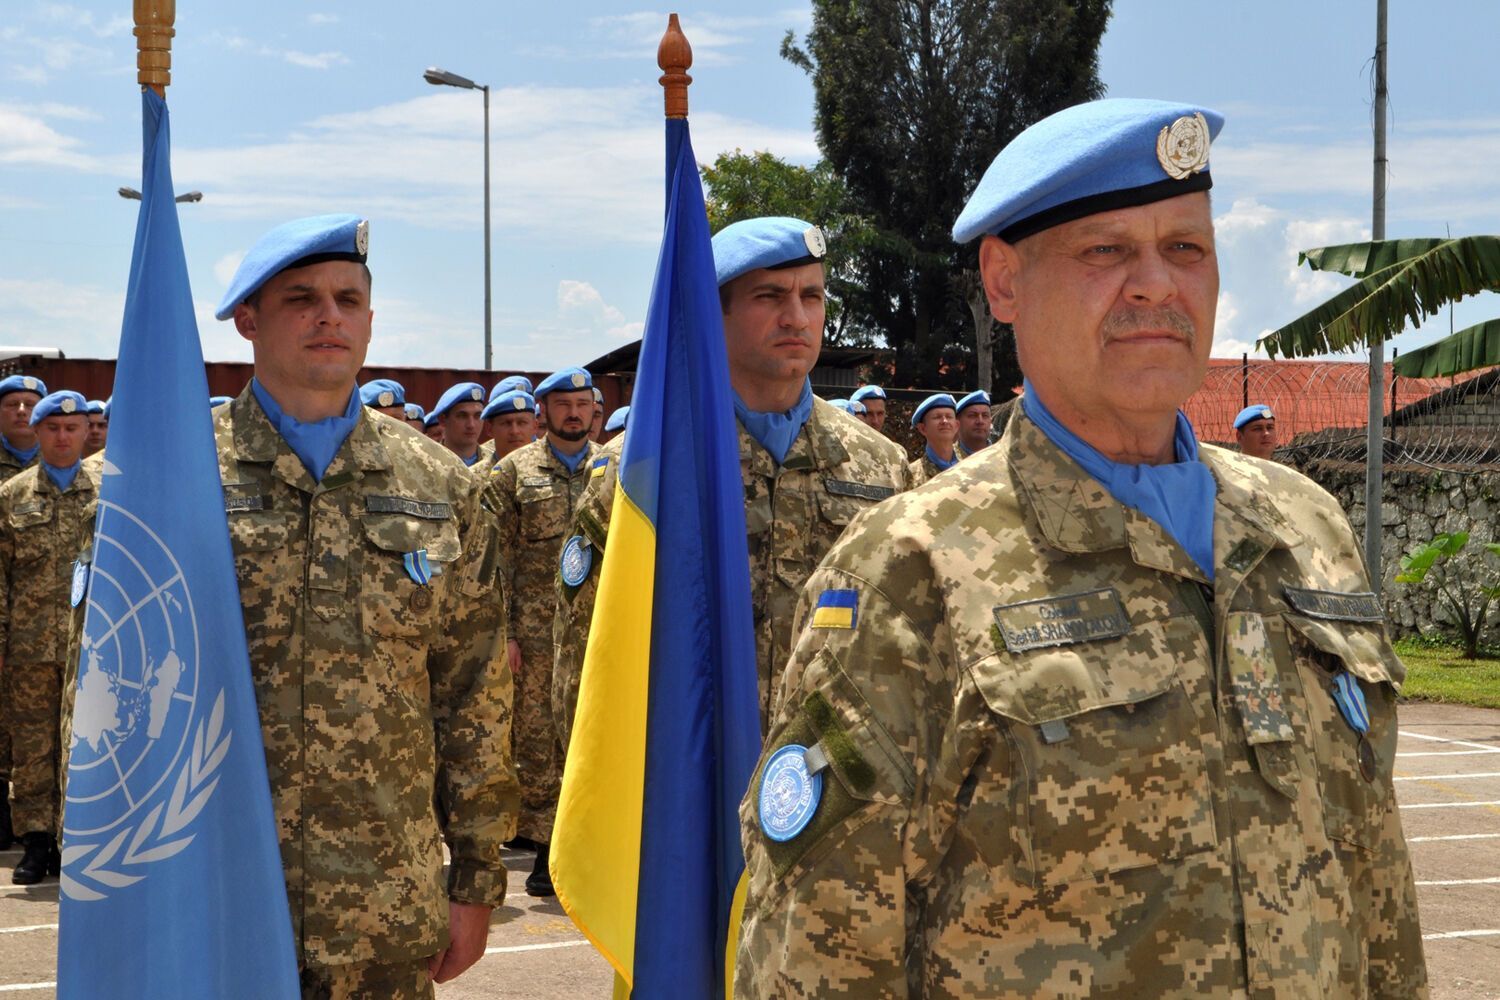 Минимум 27 операций: в каких миротворческих и спасательных миссиях принимала участие Украина

